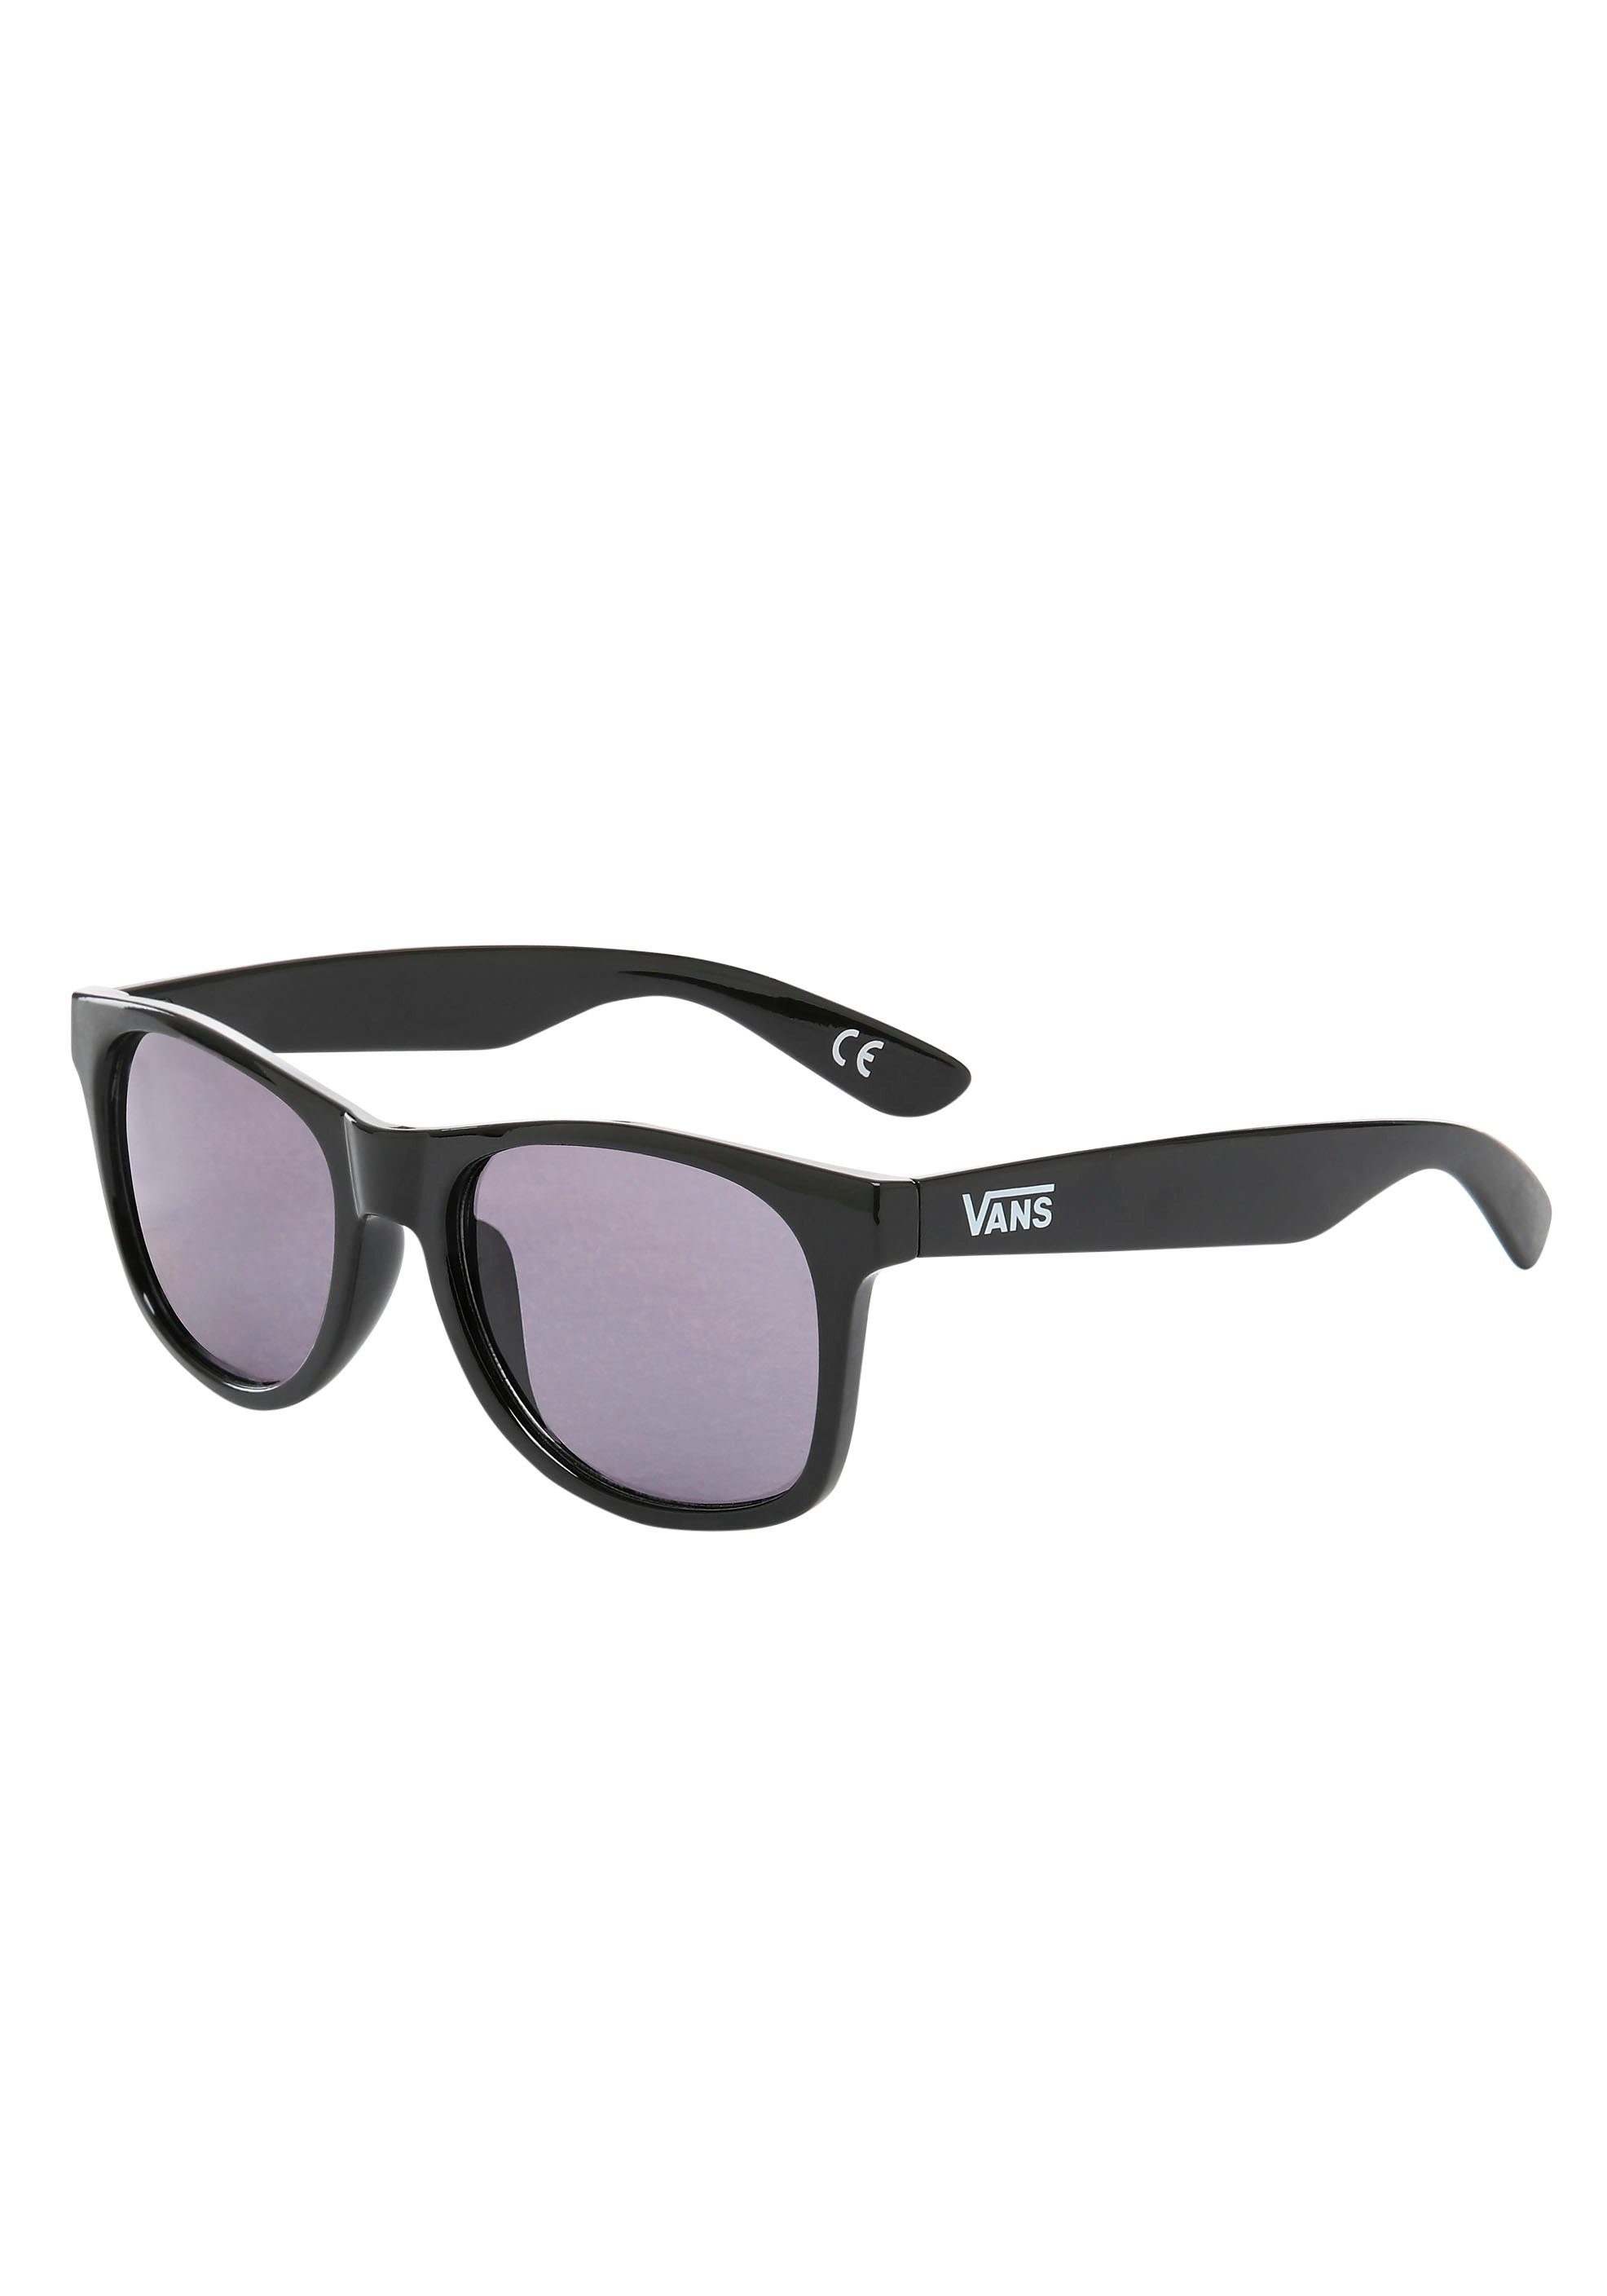 Vans Sonnenbrille SPICOLI 4 SHADES online kaufen | OTTO